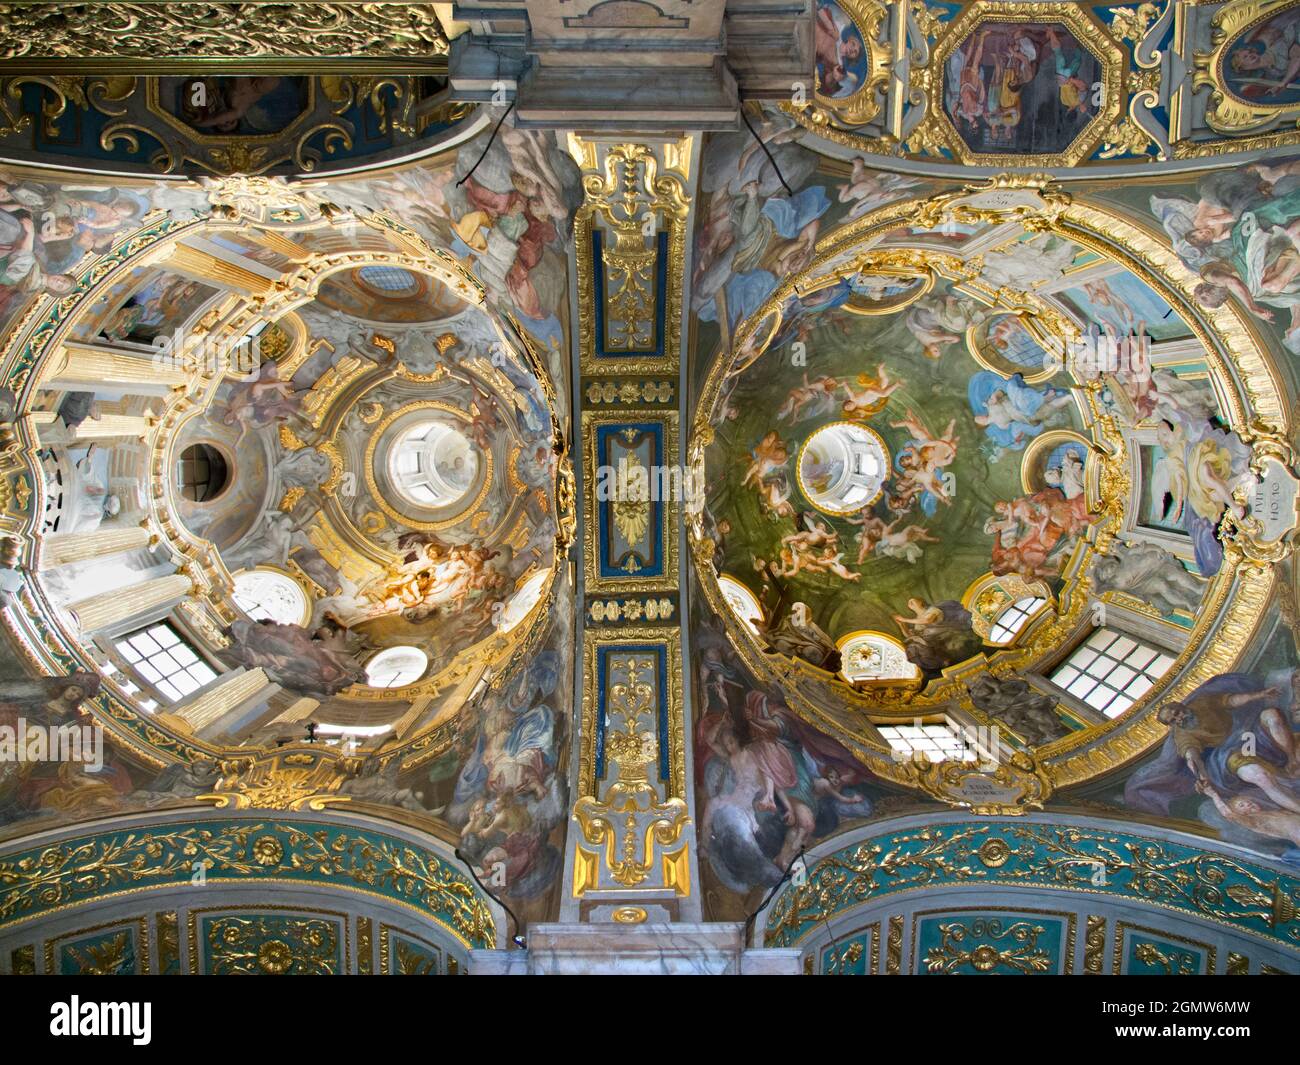 Genua, Italien - 2013. Juni; Diese großzügige, barocke Basilika ist eine katholische Kathedrale in Genua, Norditalien; ihre reich verzierten Dekorationen - hier abgebildet - emplo Stockfoto